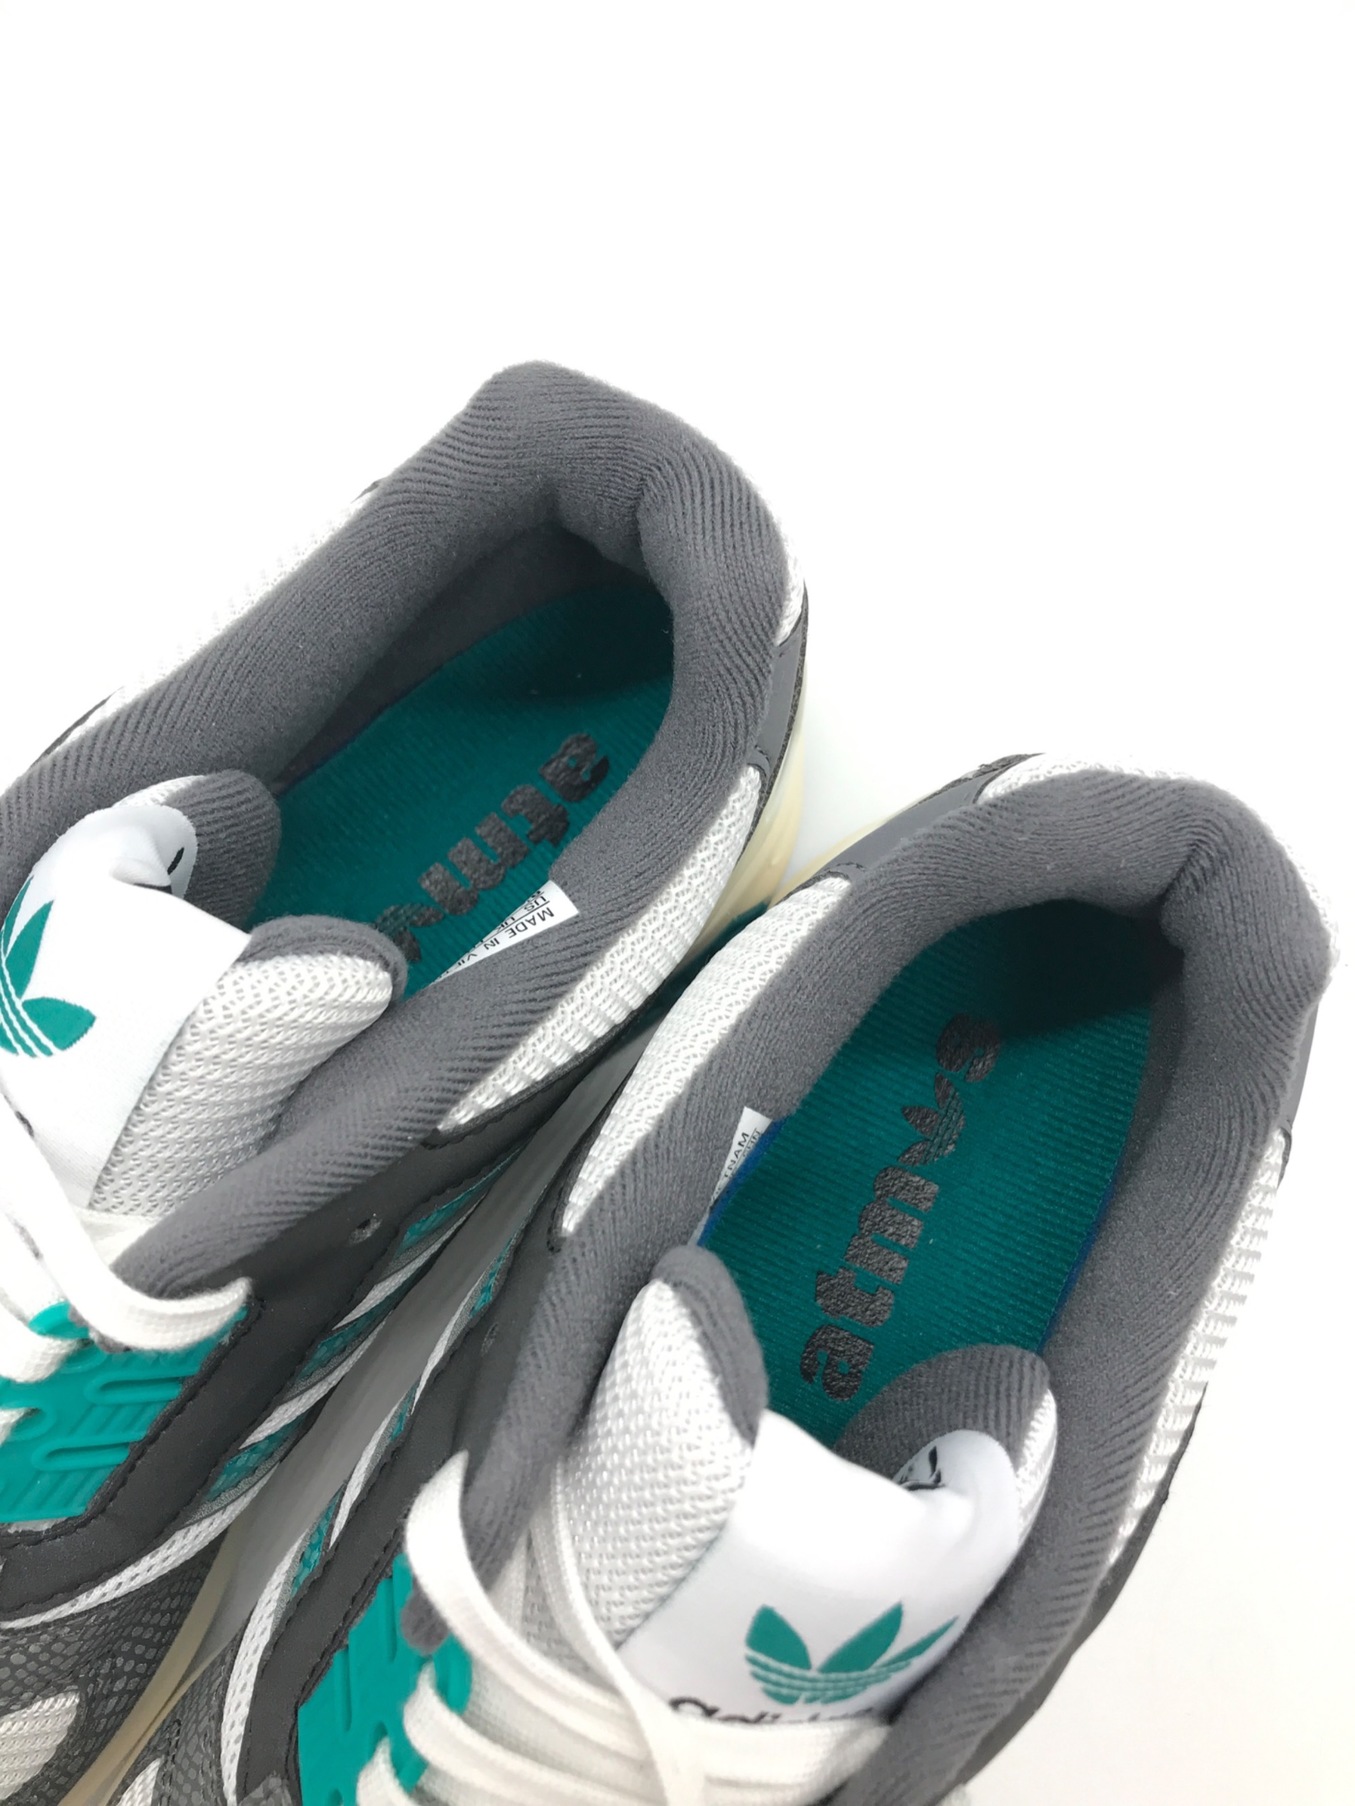 adidas アディダス メンズ スニーカー 【adidas Yeezy QNTM】 サイズ US_13.5(31.5cm) Mist Slate  スニーカー